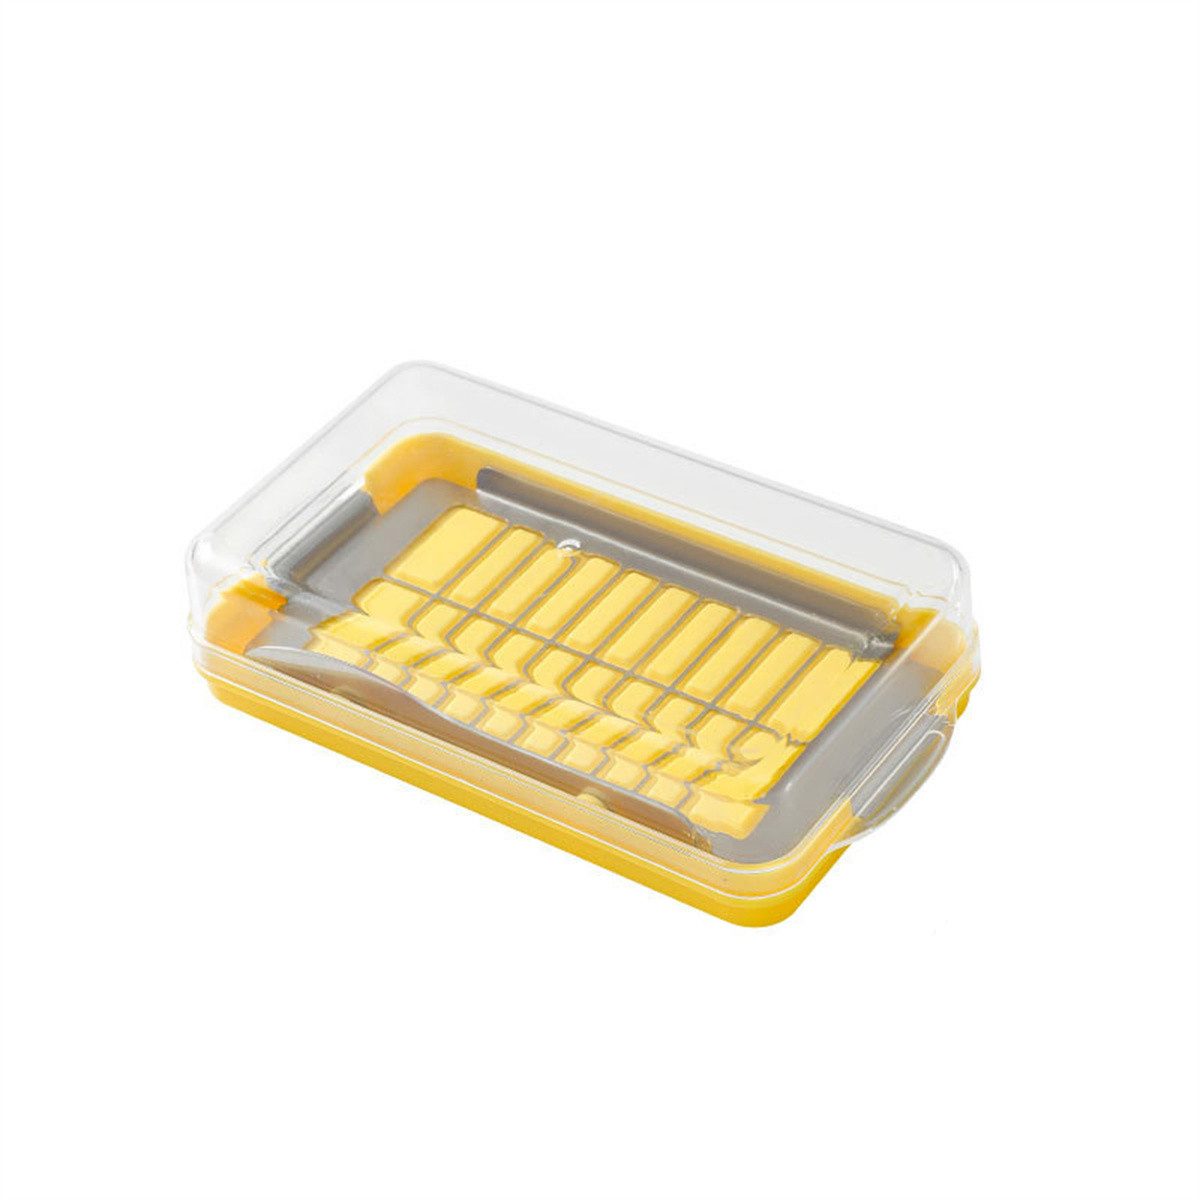 yozhiqu Butterdose Butterschneide-Aufbewahrungsbox,transparenter Edelstahl 304 mit Deckel, Butterschneide- und integrierter Buttergabel-Aufbewahrungsbox